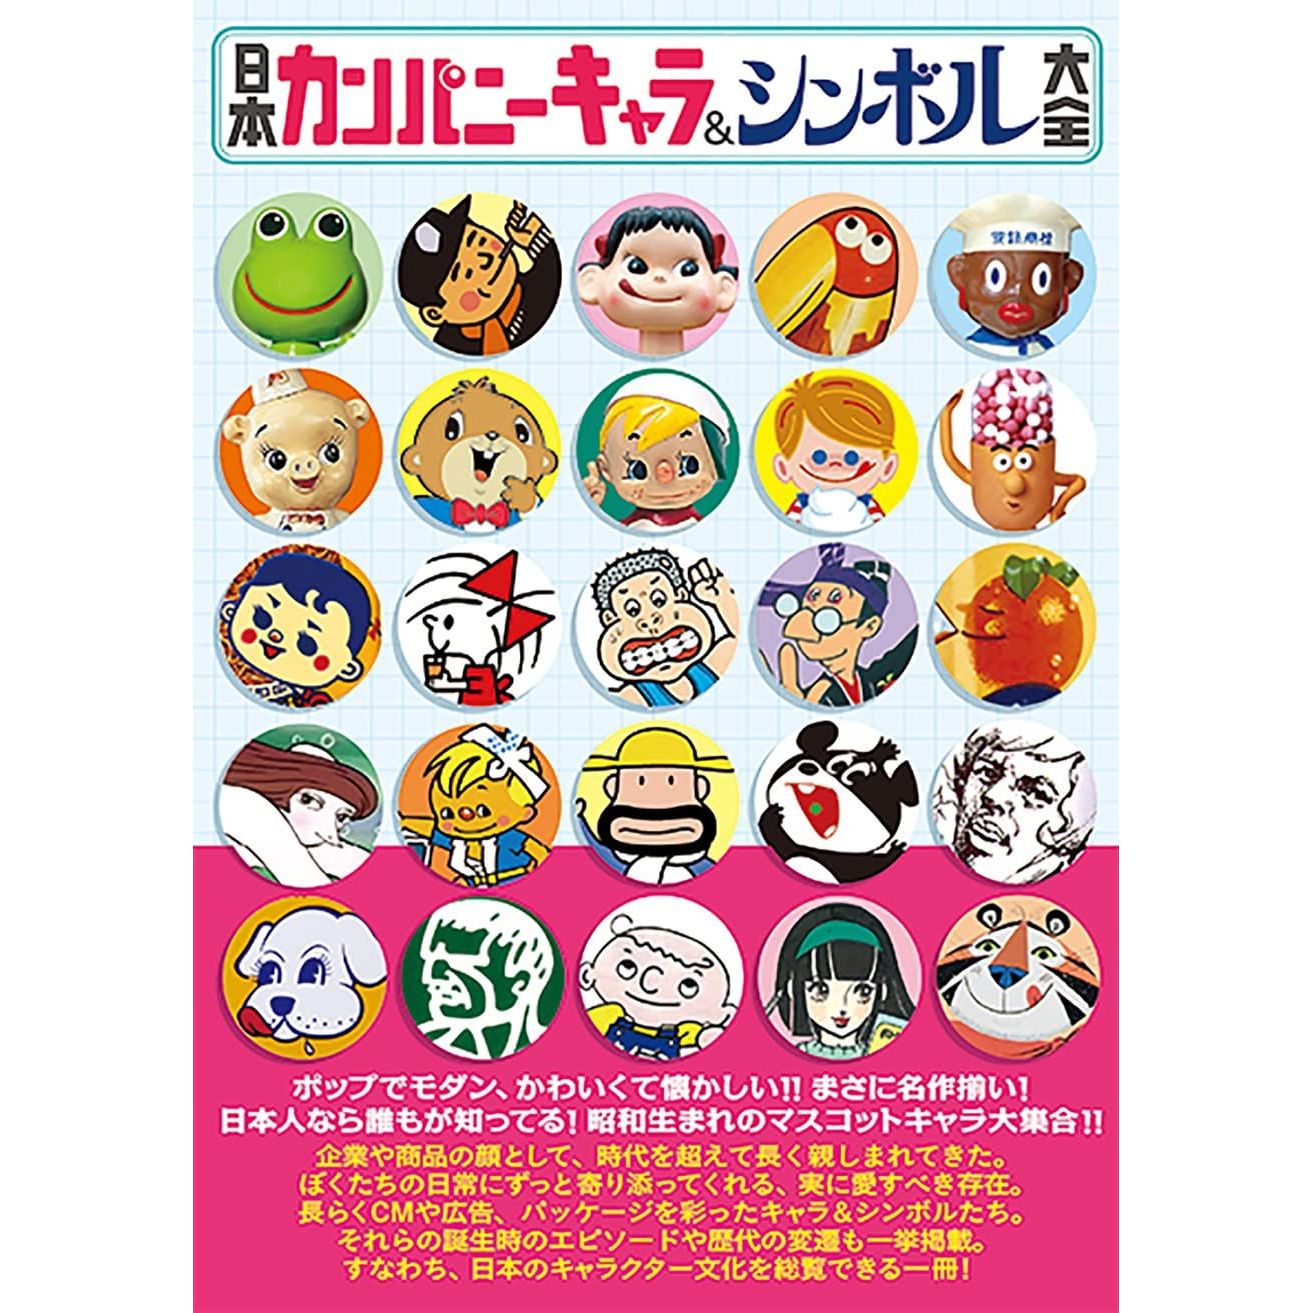 Japan Character and Logo Catalog